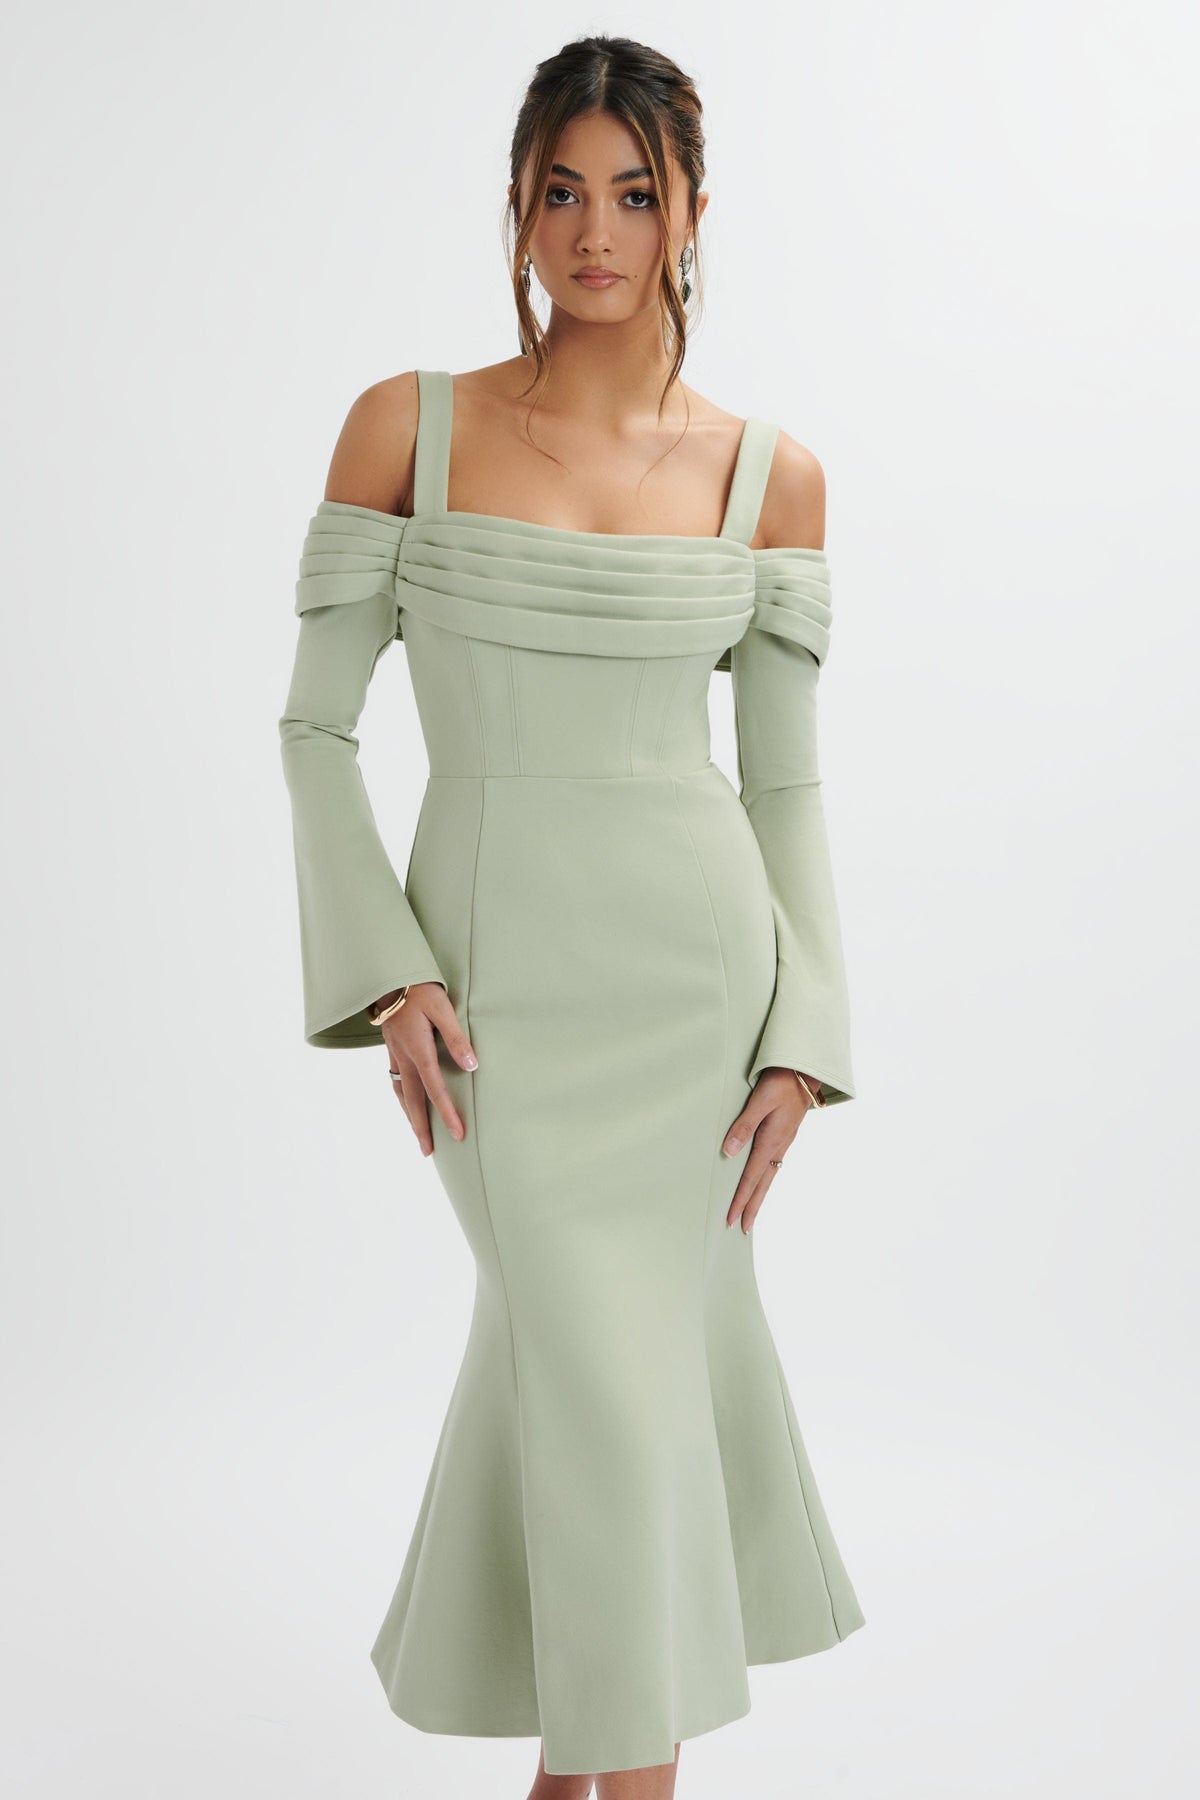 Midi Dresses | Elegant Mid-Length Dresses for Women | UK